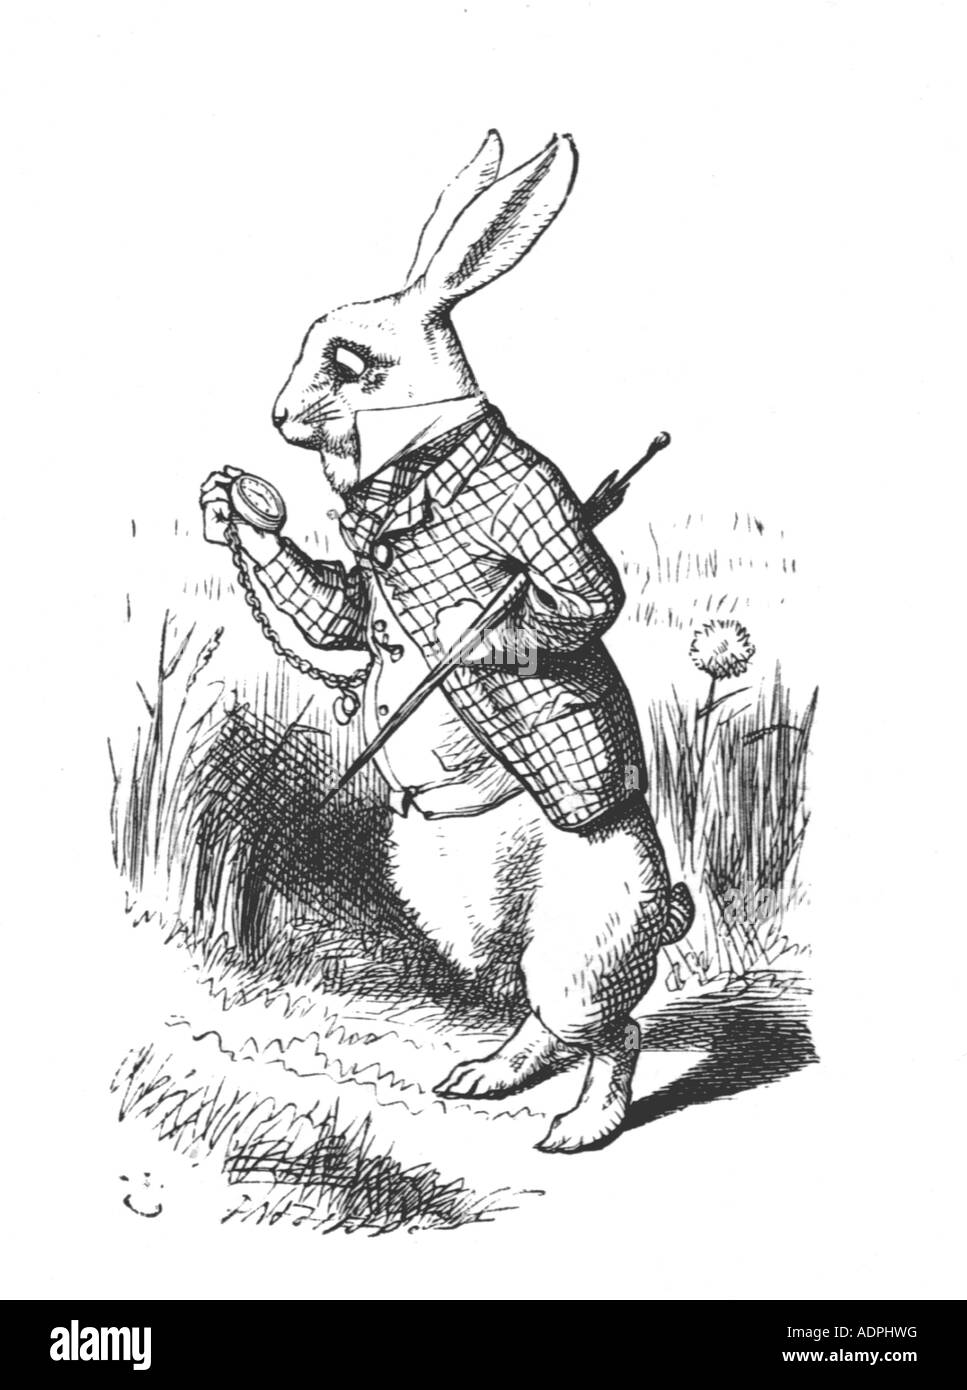 Illustration du lapin blanc dans Alice au pays des merveilles de Lewis Carroll par John Tenniel. Le lièvre regardant la montre de poche Banque D'Images